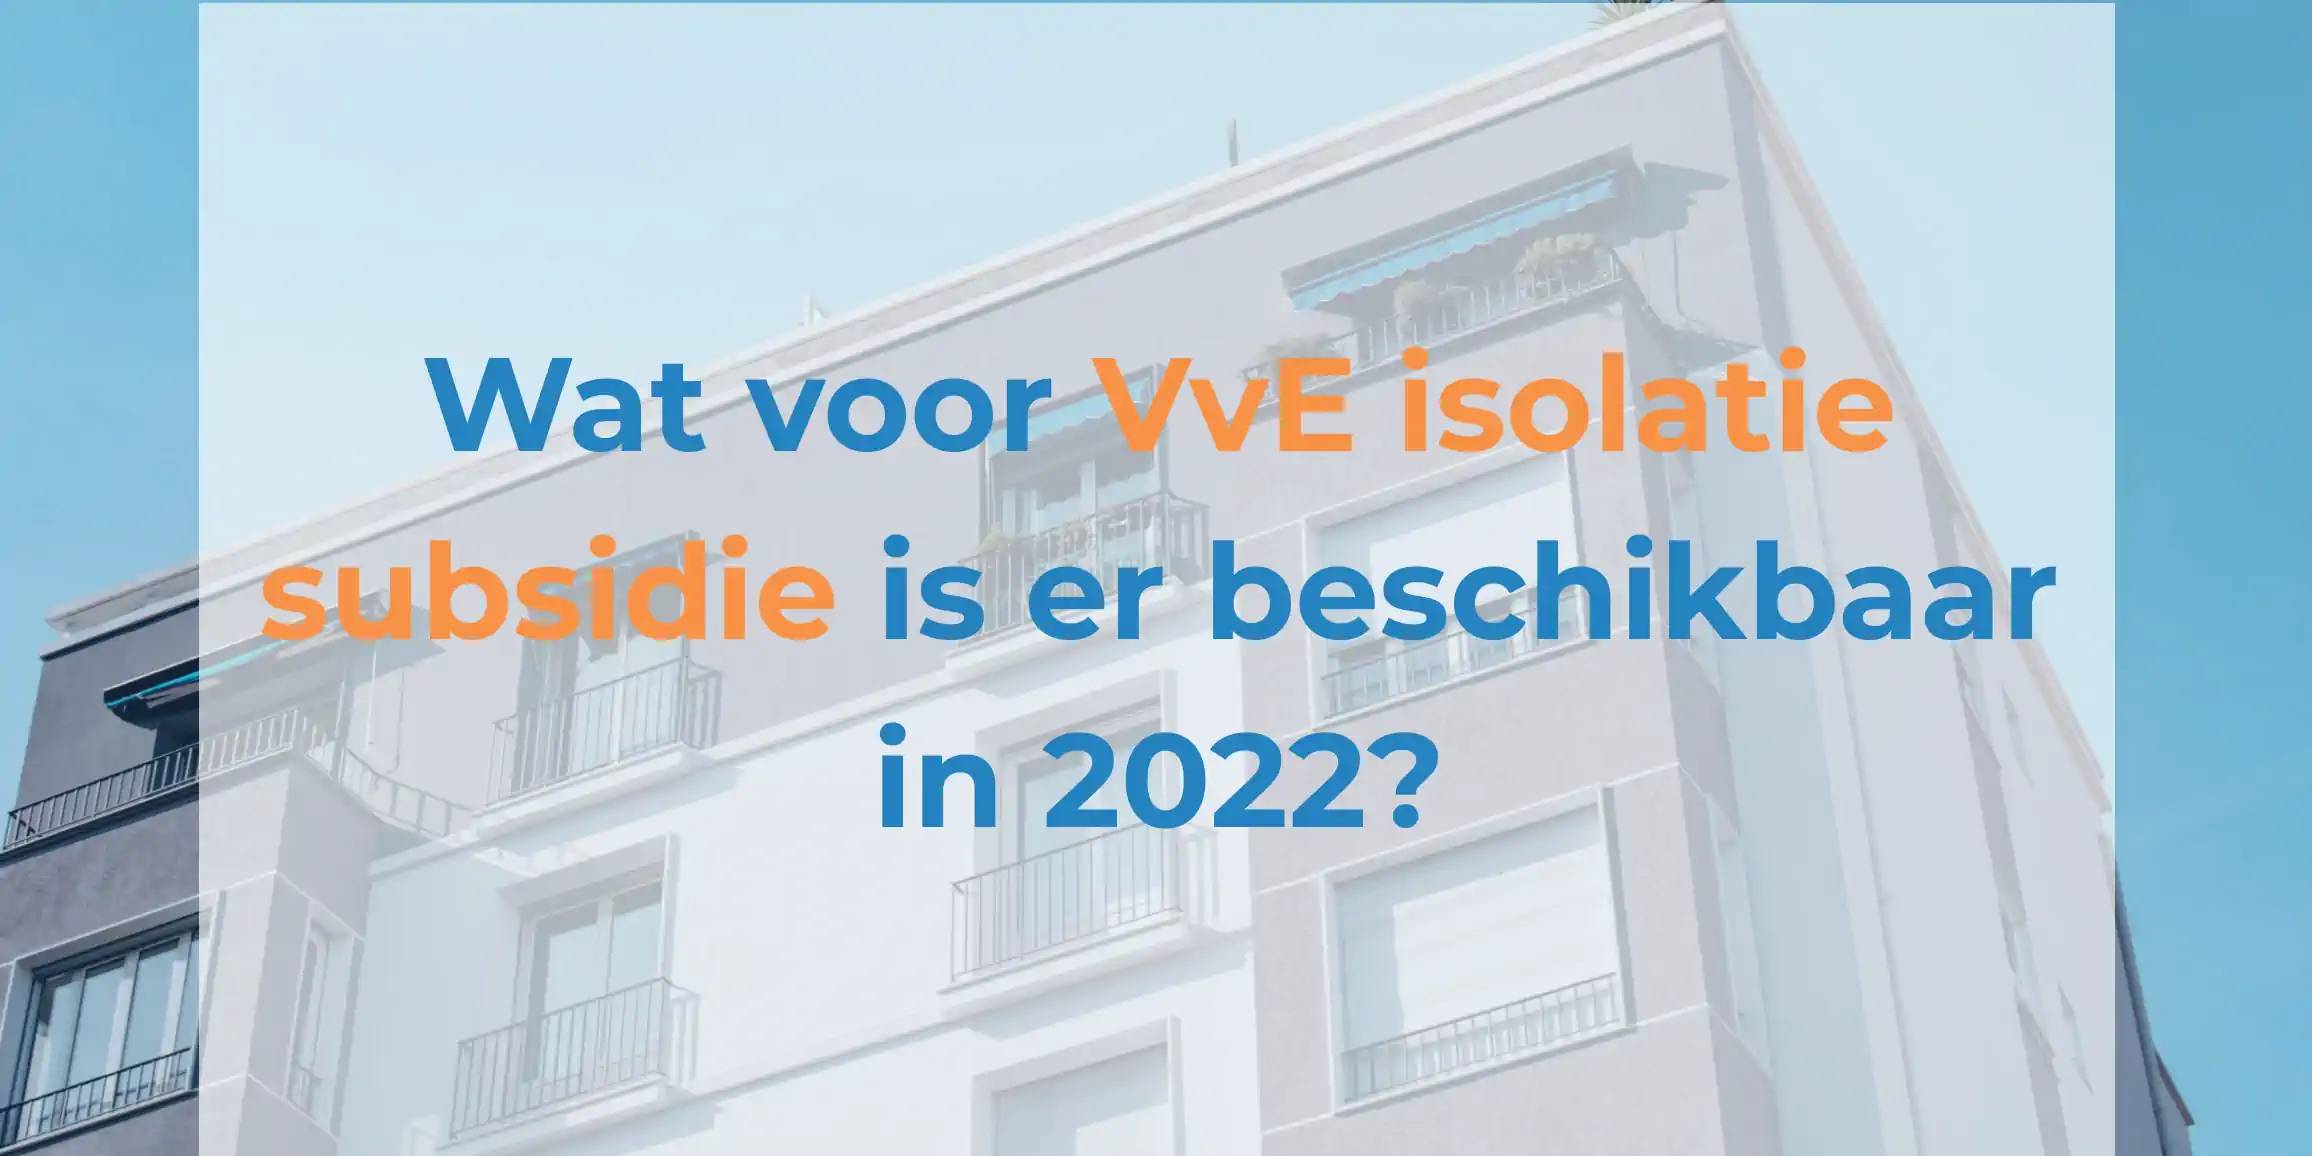 Wat voor VvE isolatie subsidie is er beschikbaar in 2022?